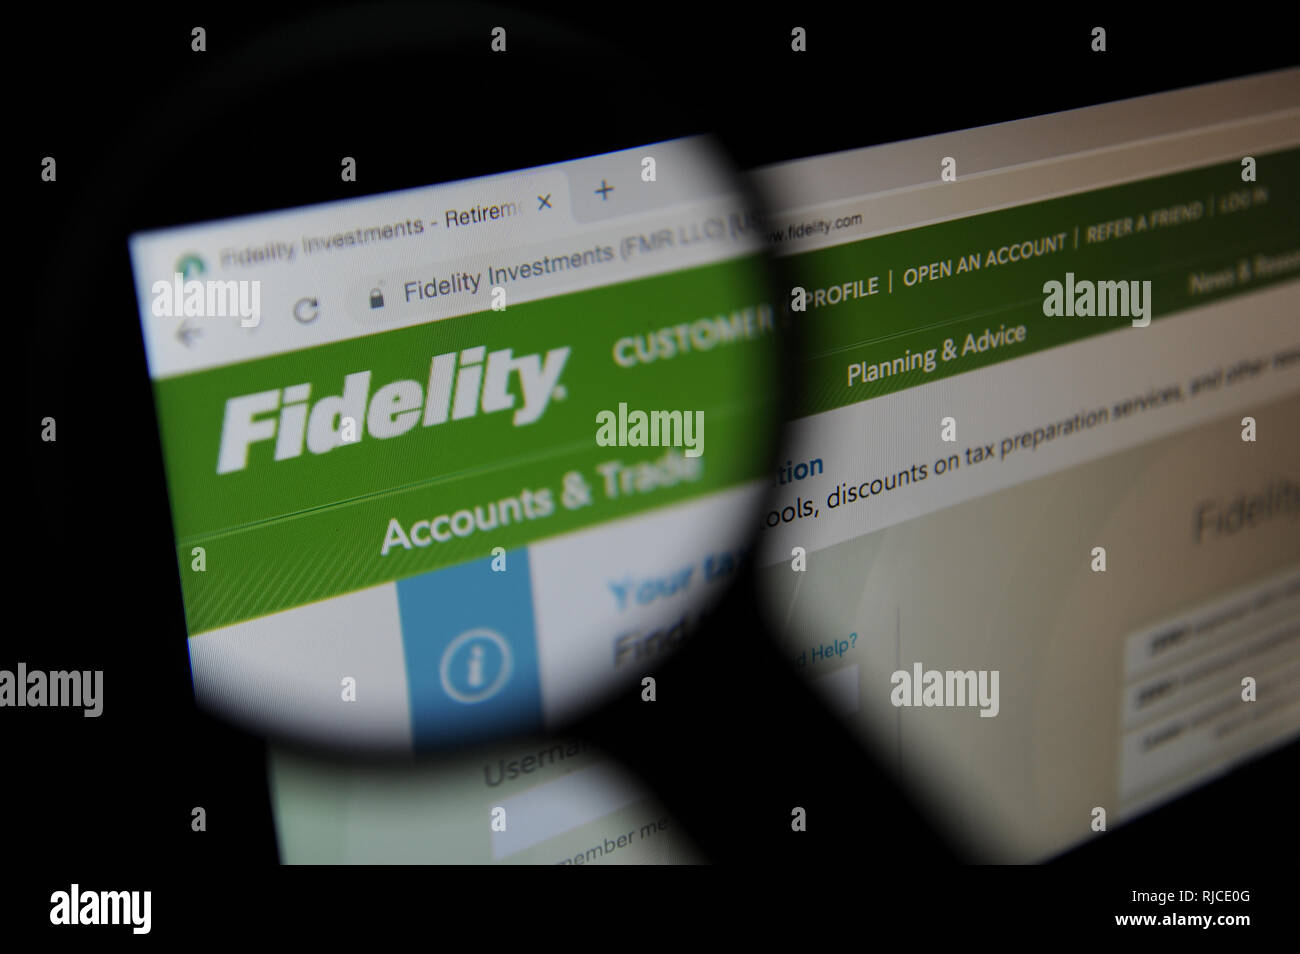 Site internet de la multinationale financial services corporation Fidelity Investments Banque D'Images